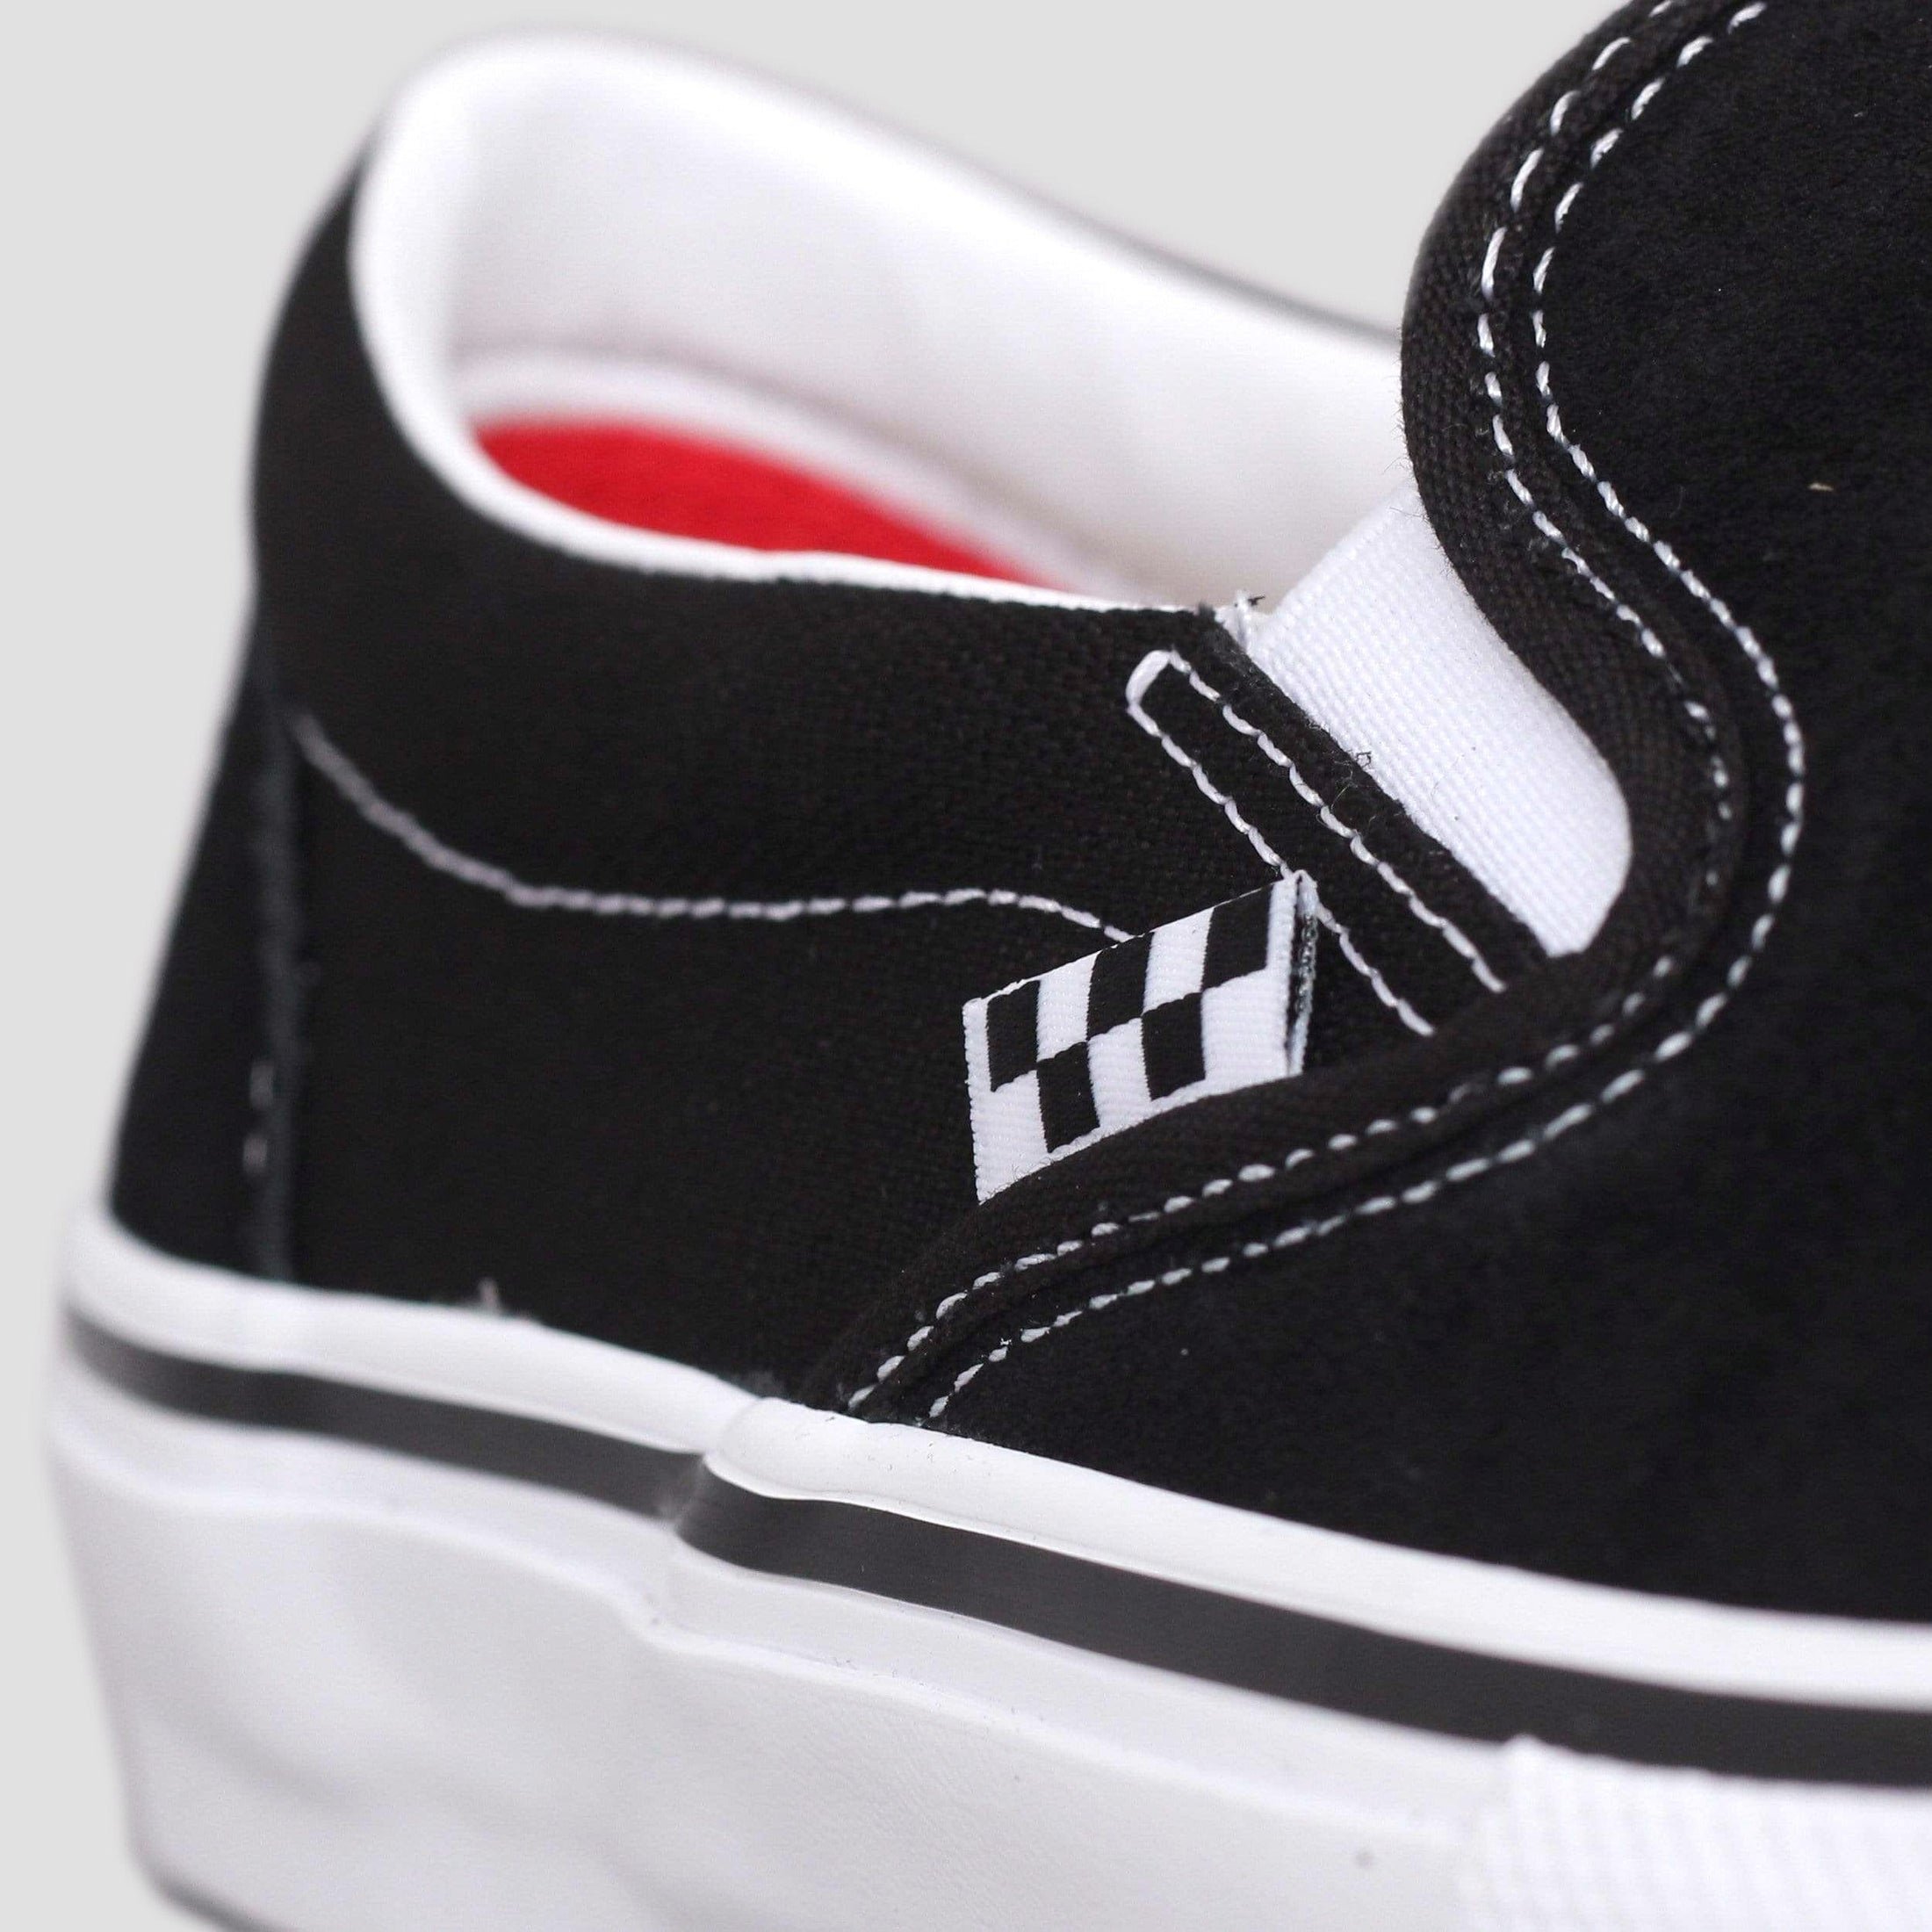 Vans Skate Slip-On Shoes Black / White